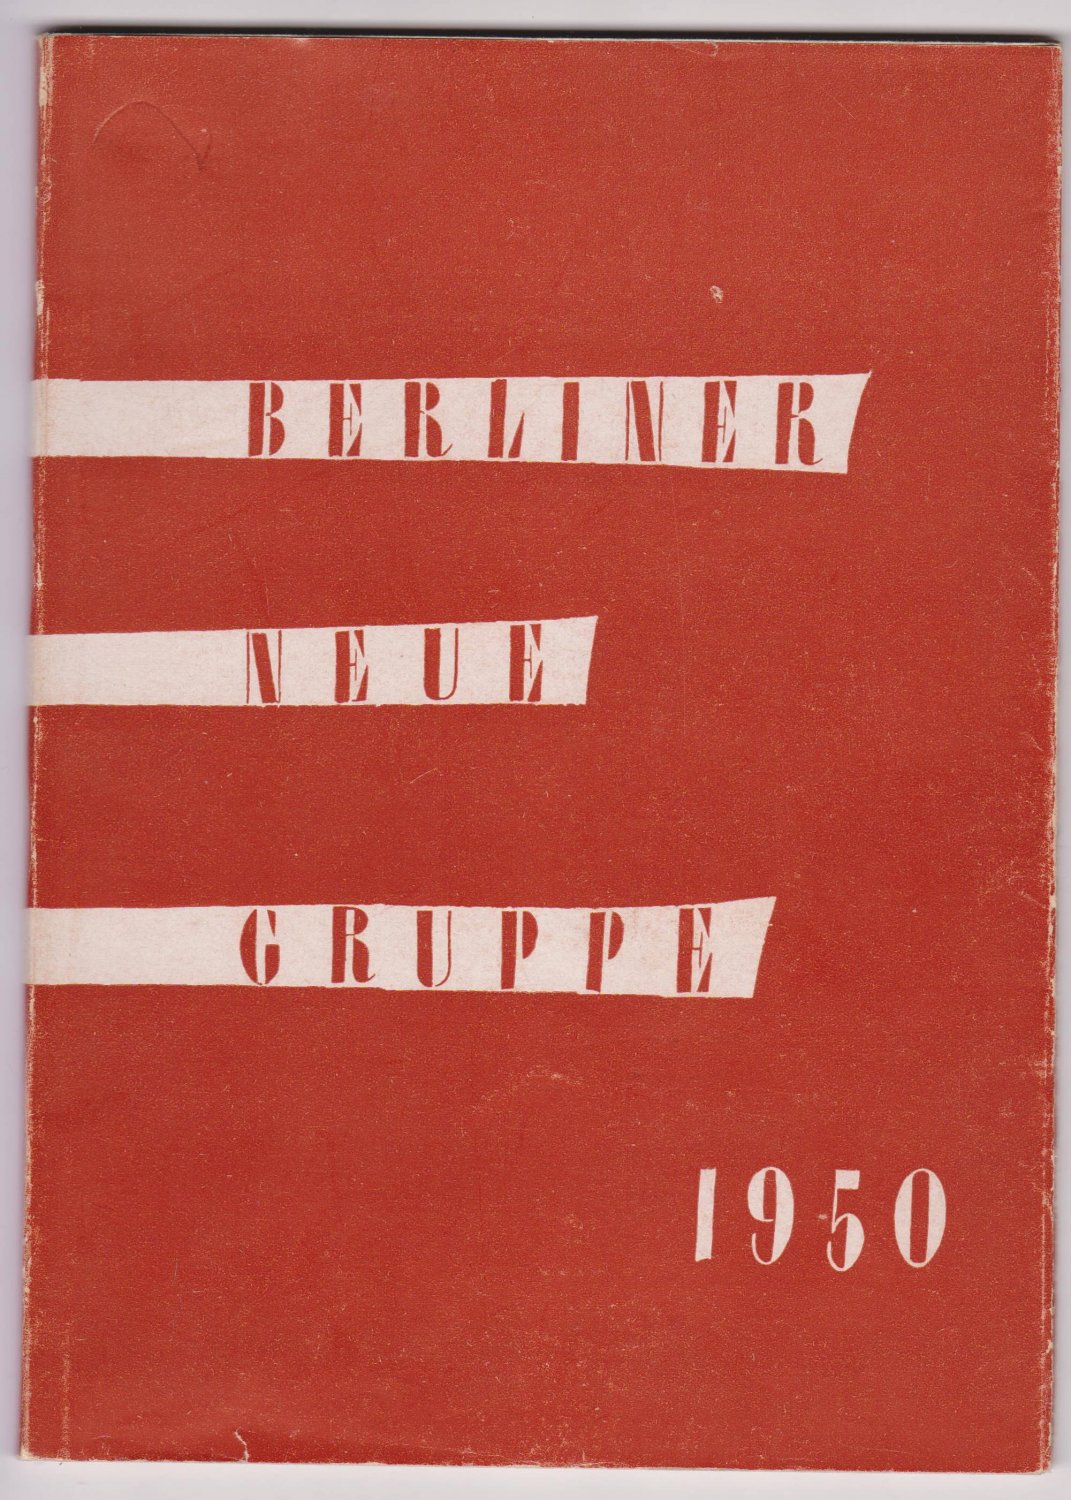 Berliner Neue Gruppe:  Berliner Neue Gruppe 1950. 